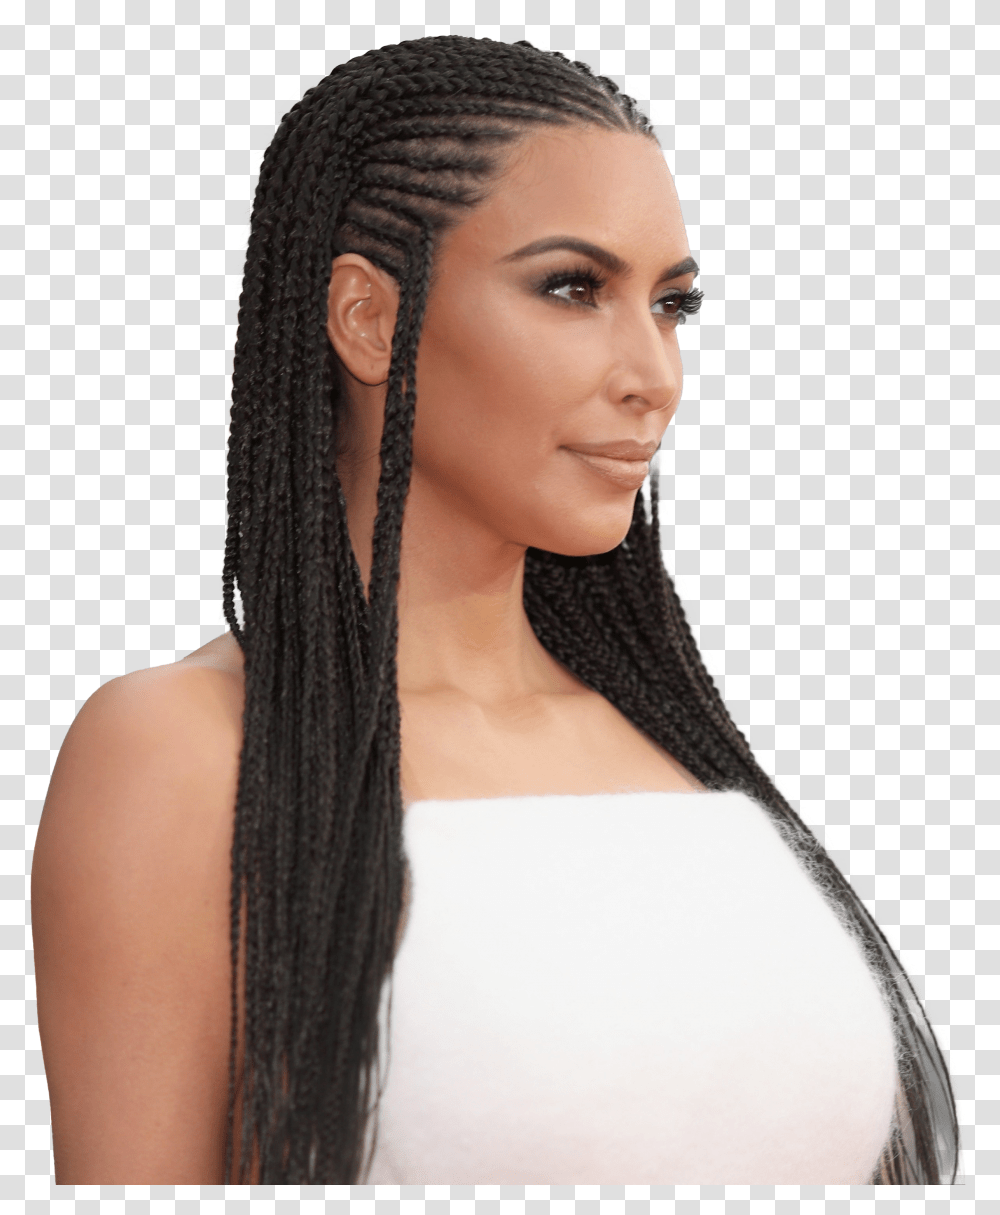 Braids Hairstyle Pic Kim Kardashian With Braids Transparent Png